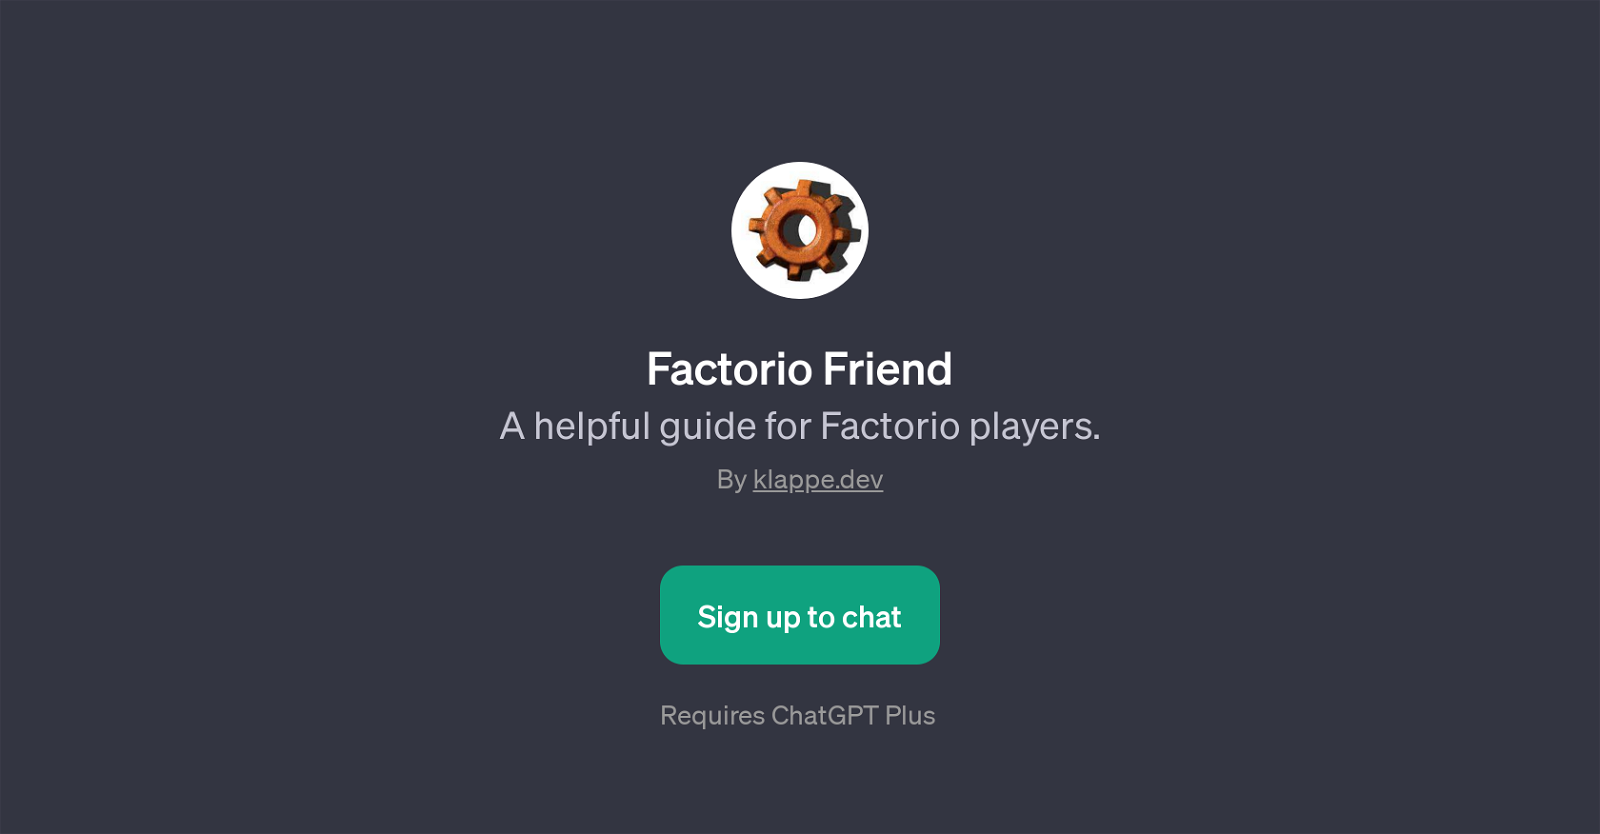 Factorio Friend website